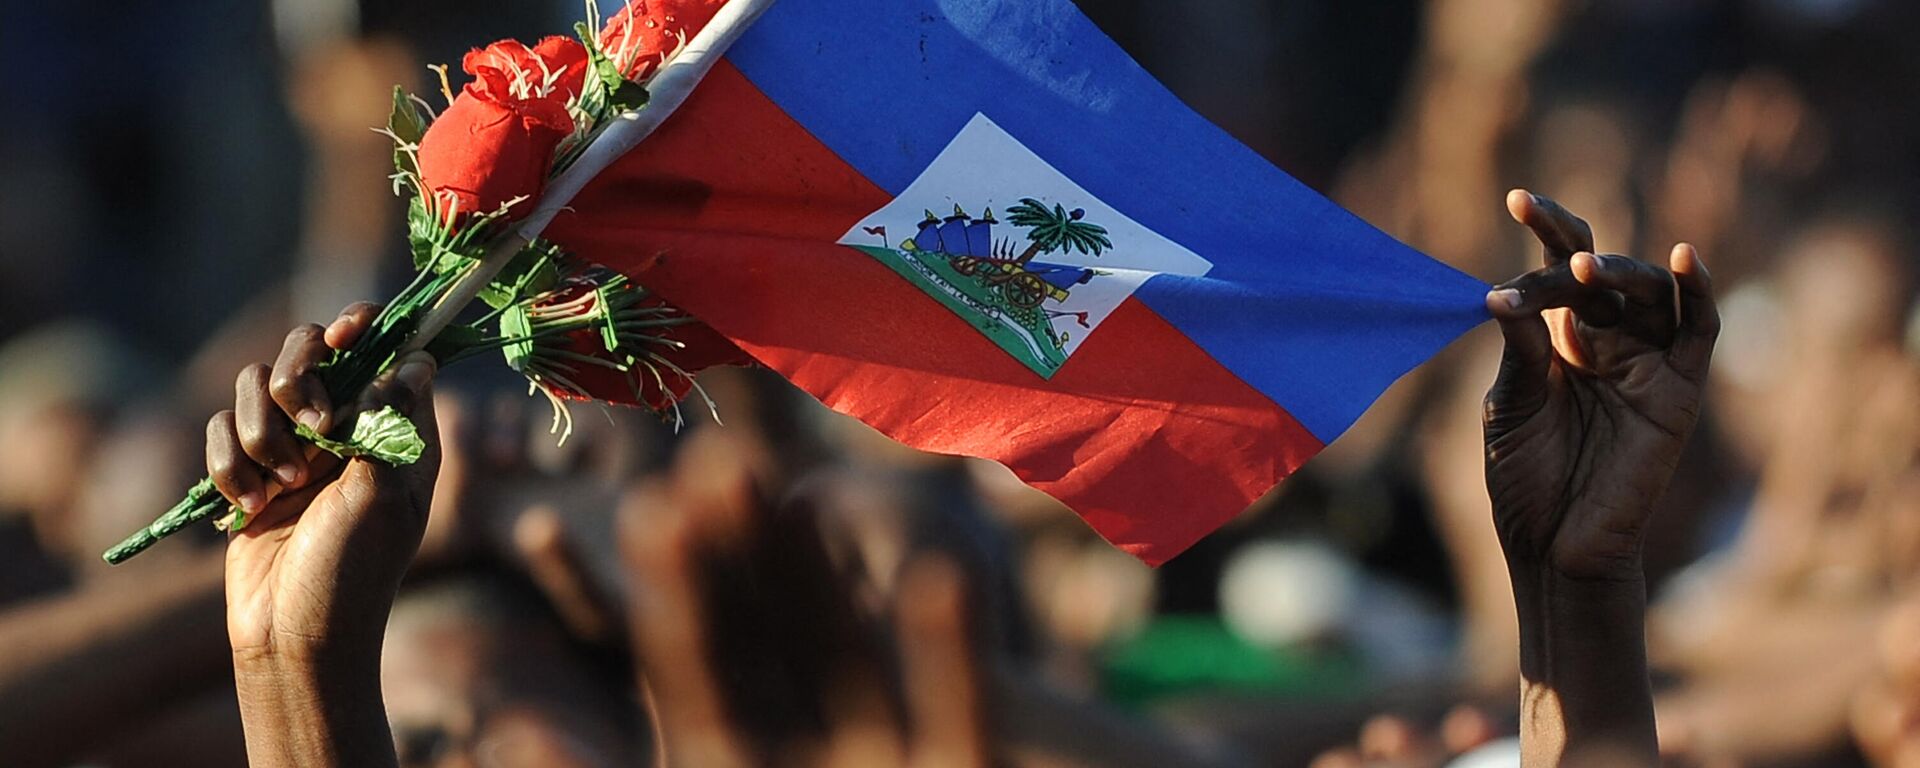 La bandera de Haití - Sputnik Mundo, 1920, 30.07.2021